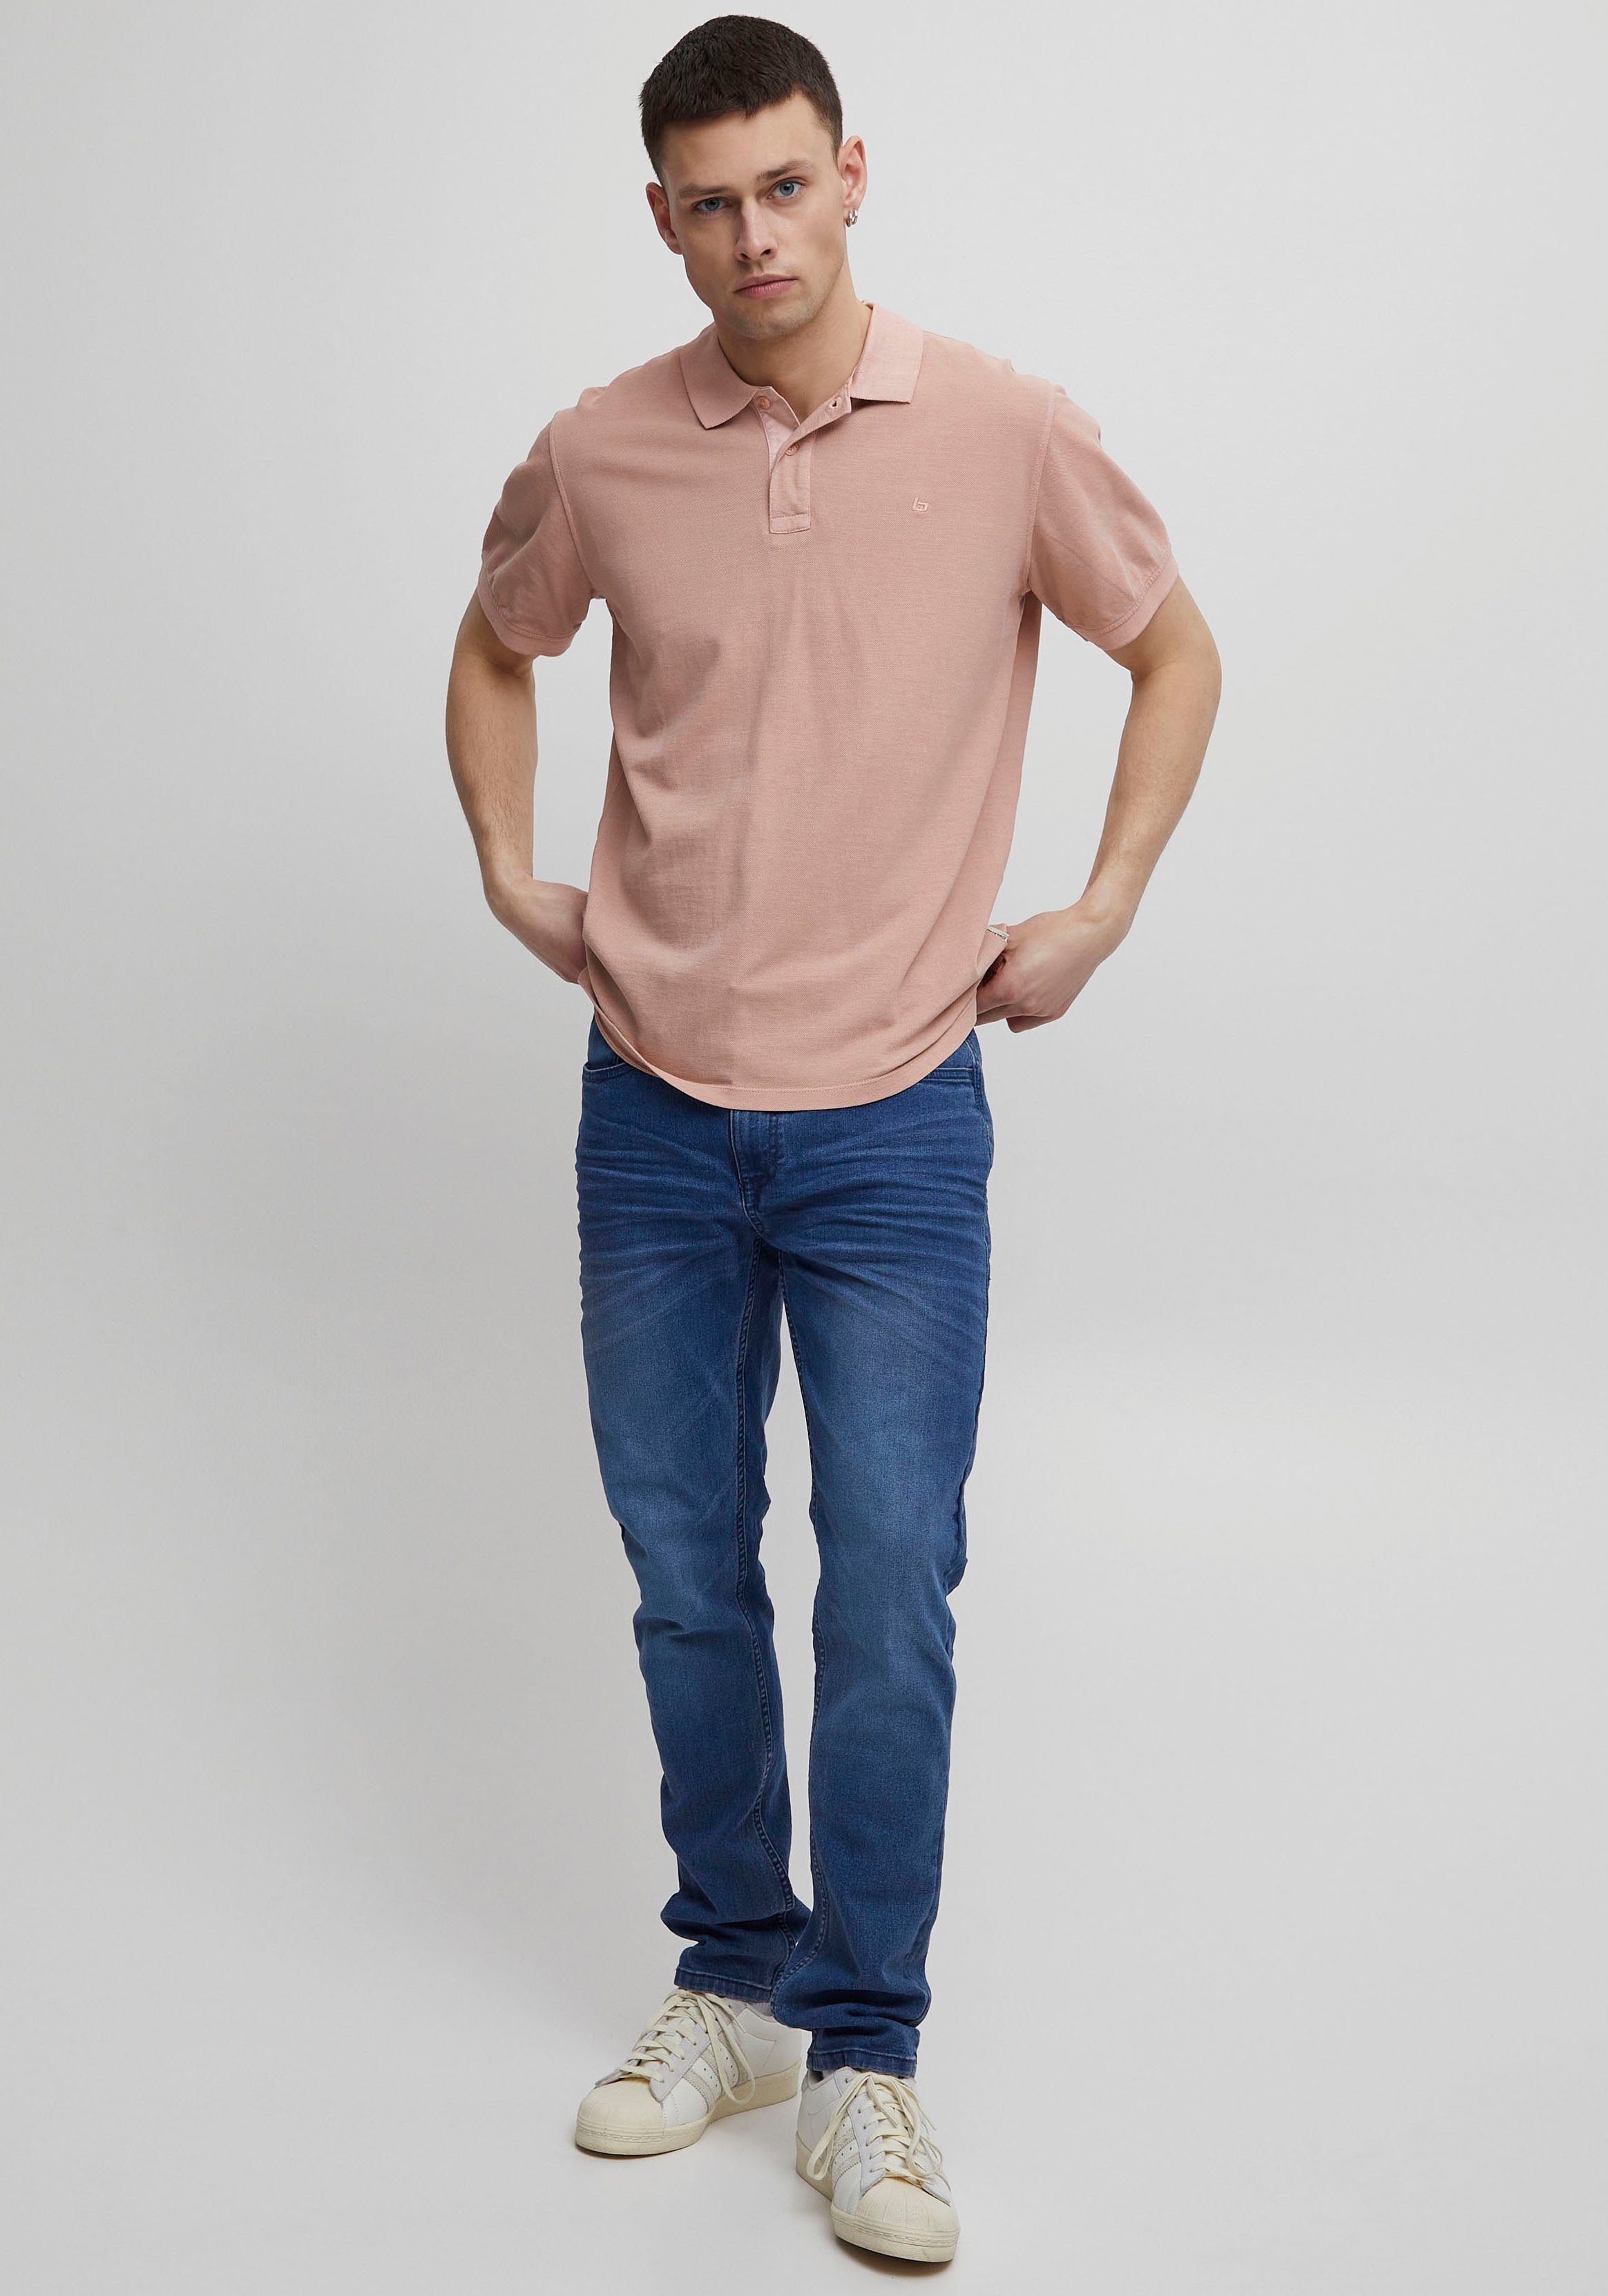 BL-Poloshirt Blend Poloshirt pink